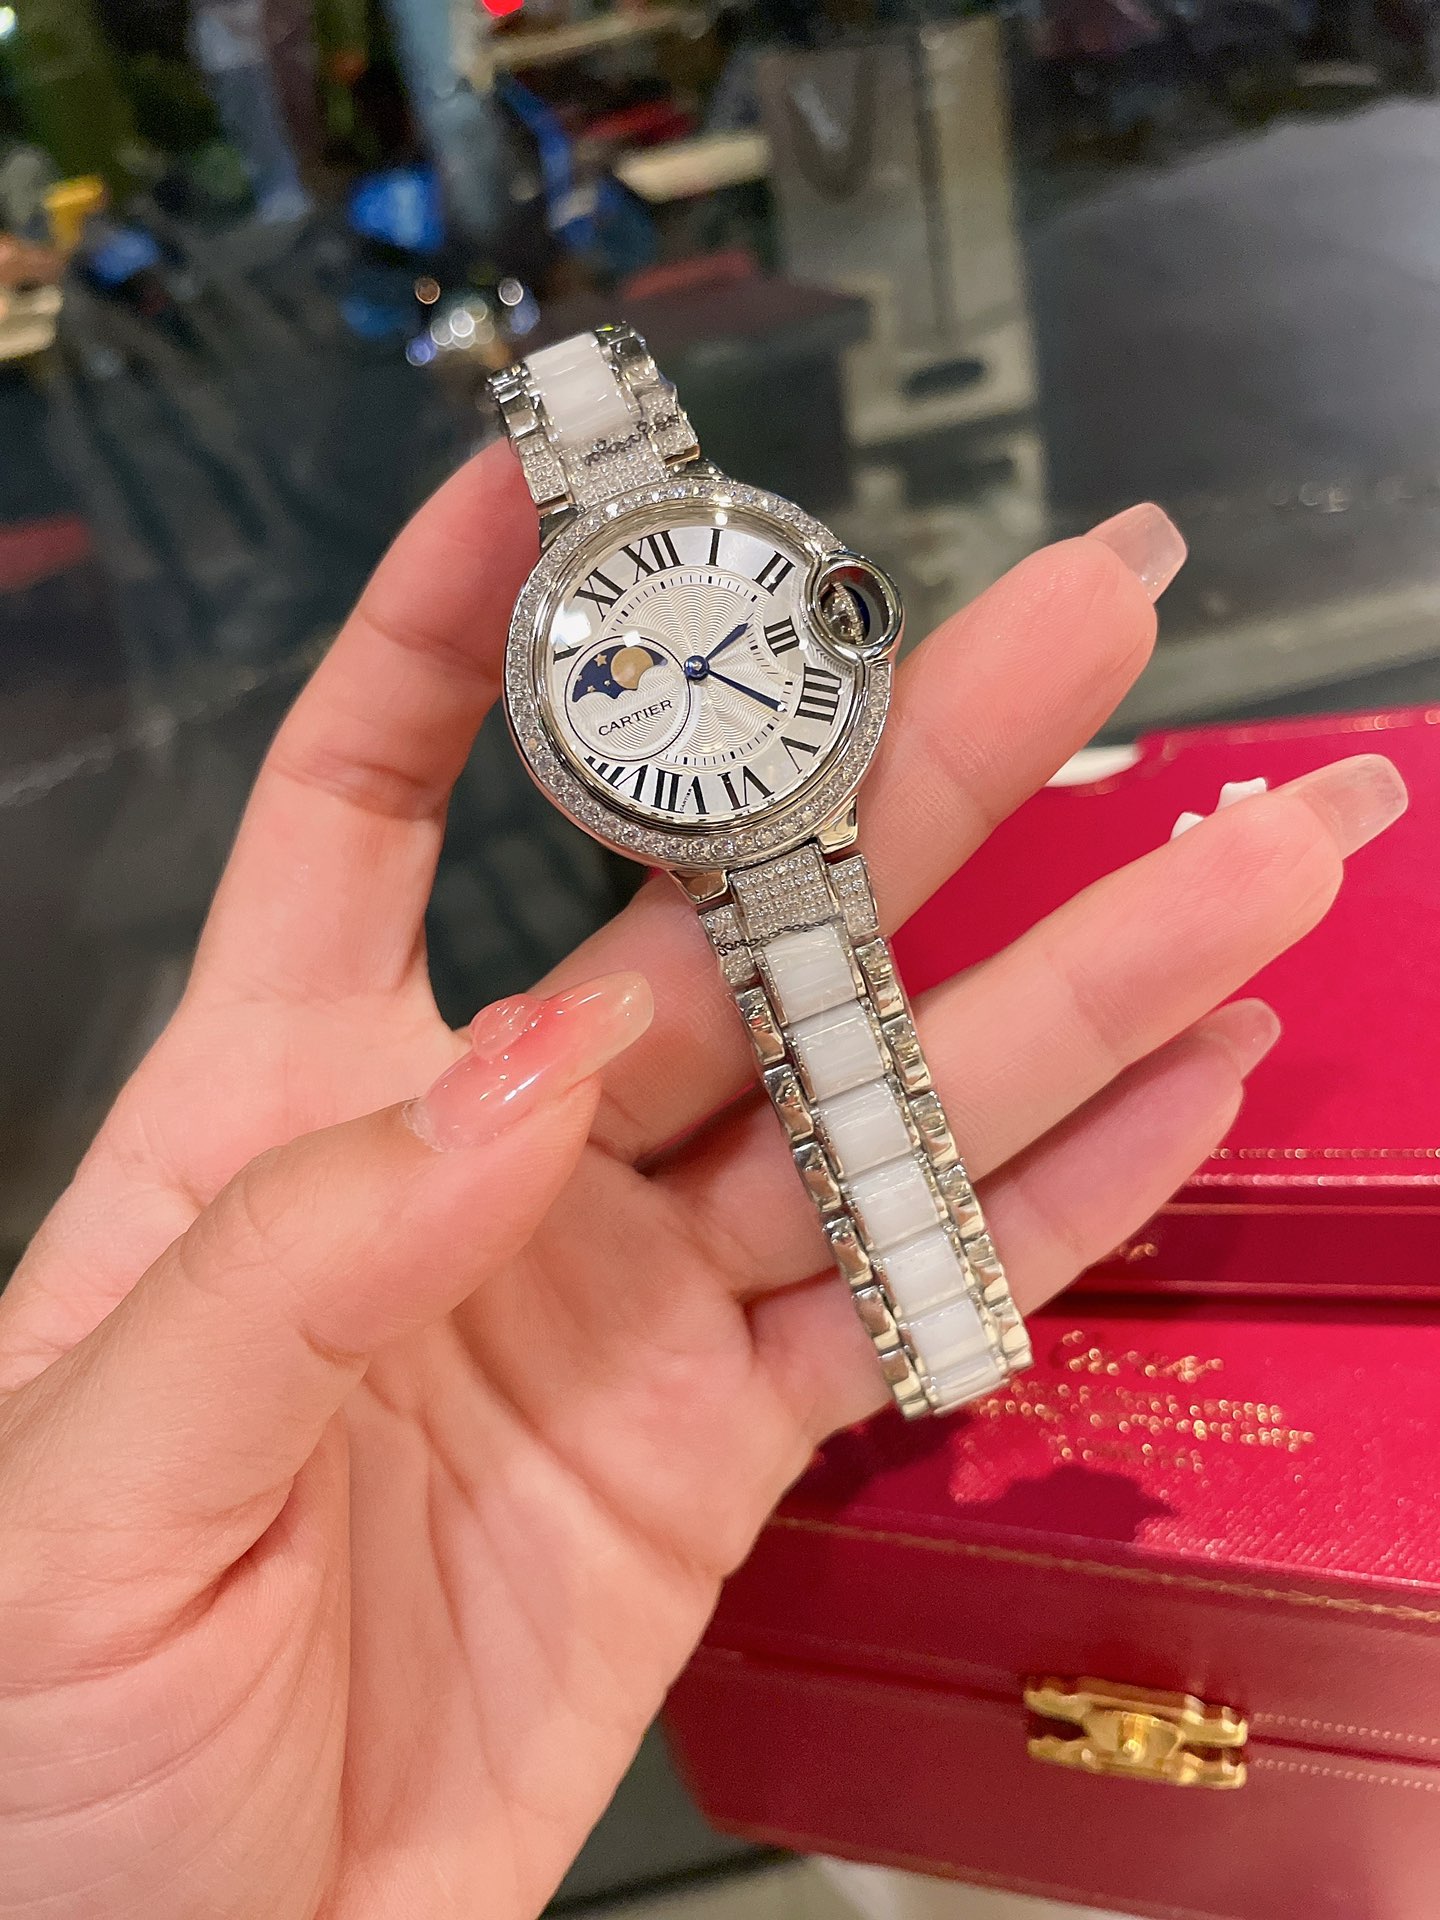 CARTIERカルティエ 真贋 時計スーパーコピー フランス 薄い腕時計 スチールバンド レザー 新品 ホワイト_1